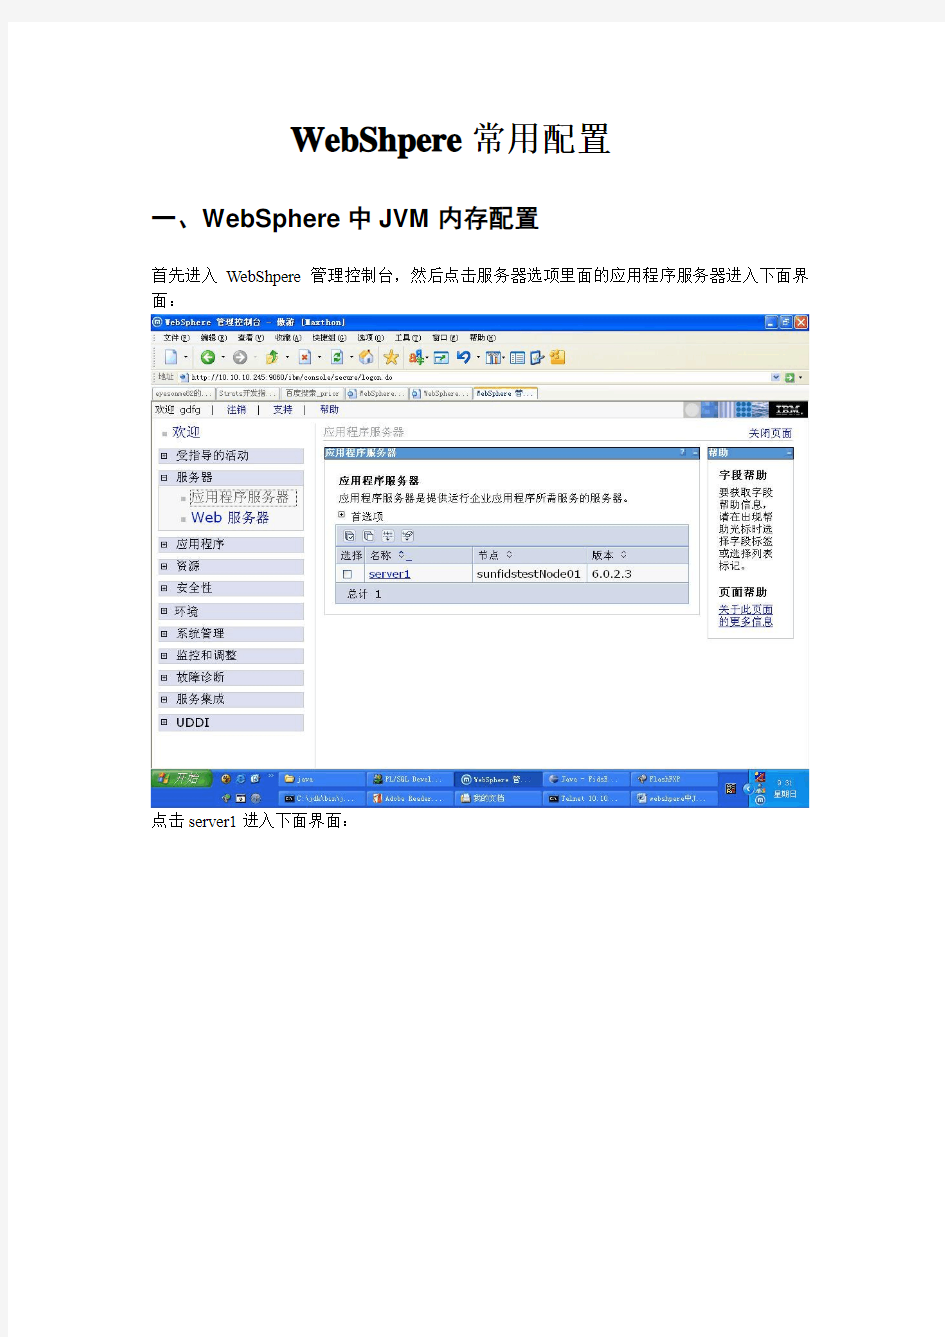 WebSphere配置文档